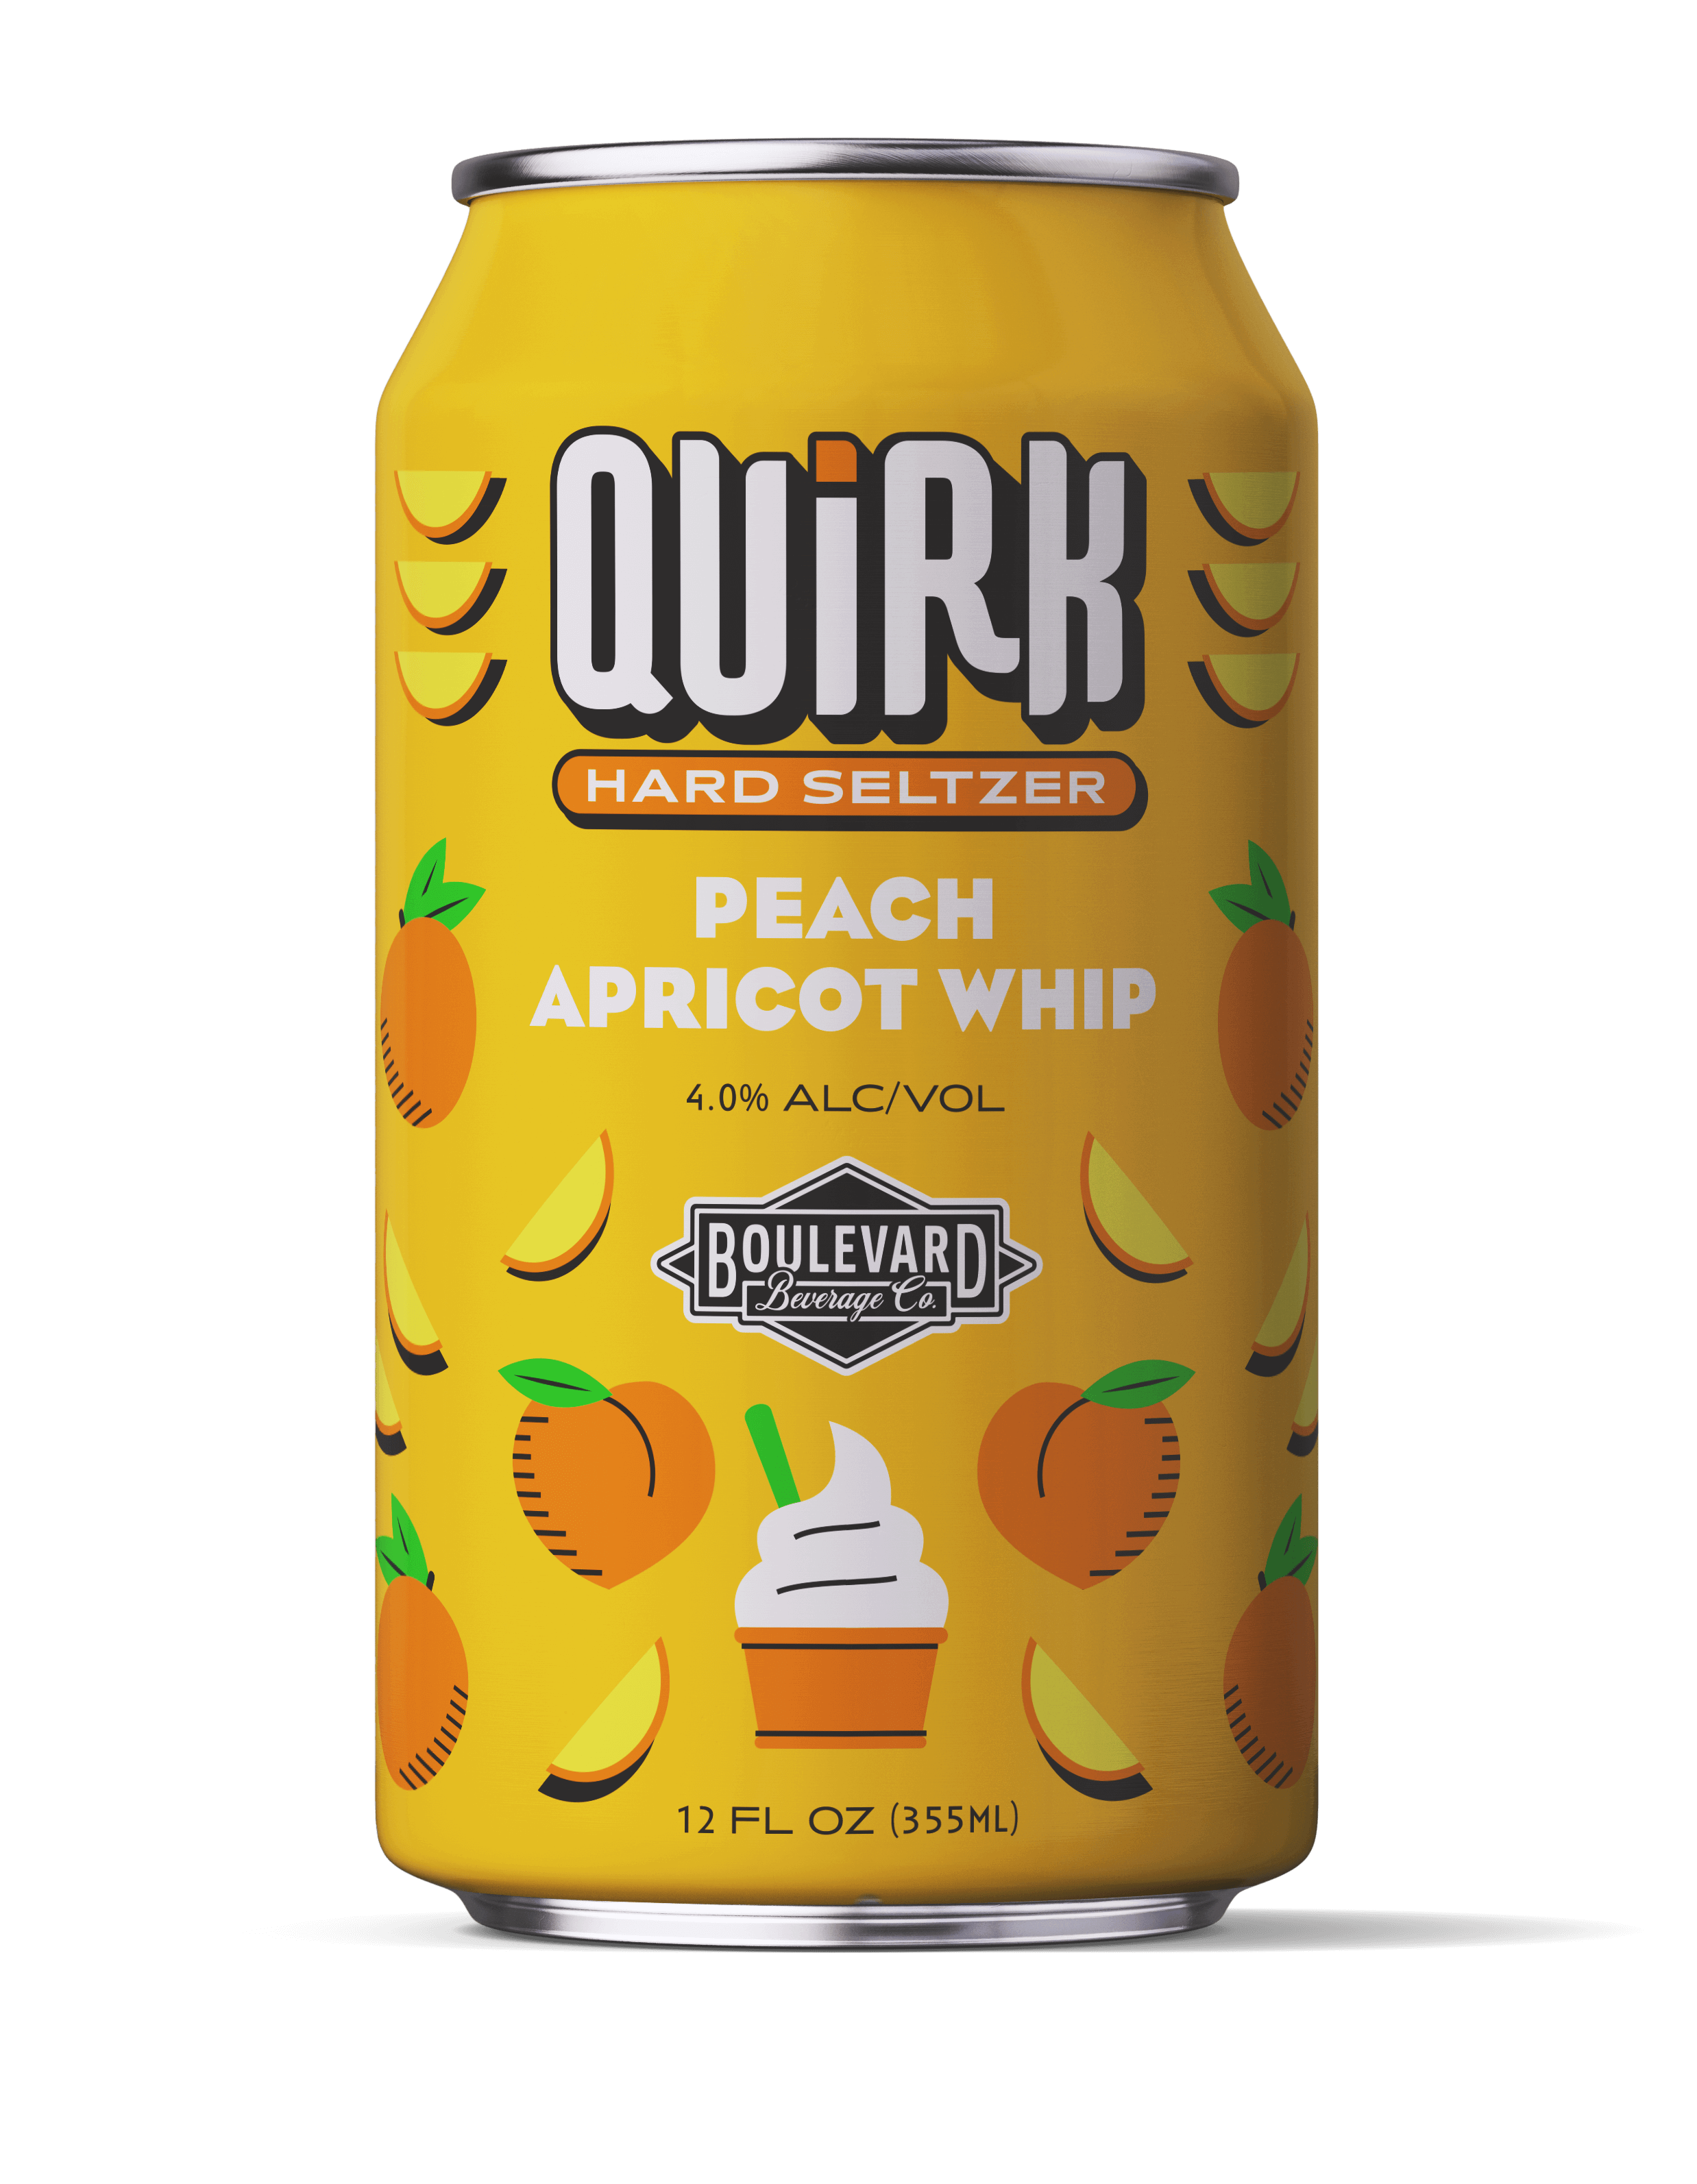 Peach Apricot Whip